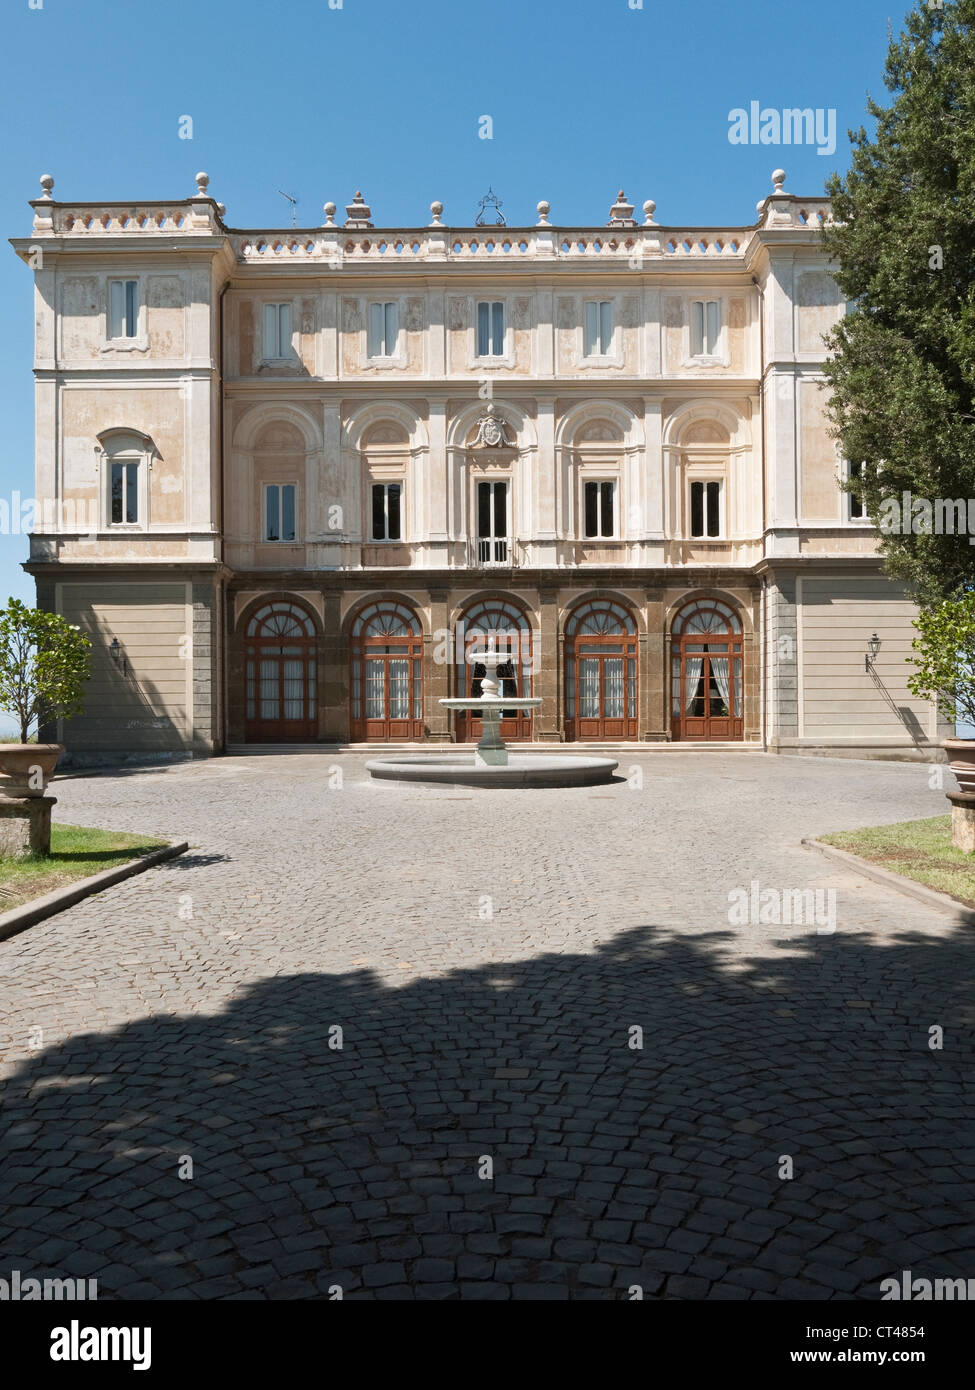 Park Hotel Villa Grazioli, Grottaferrata, Rome, Italy Stock Photo